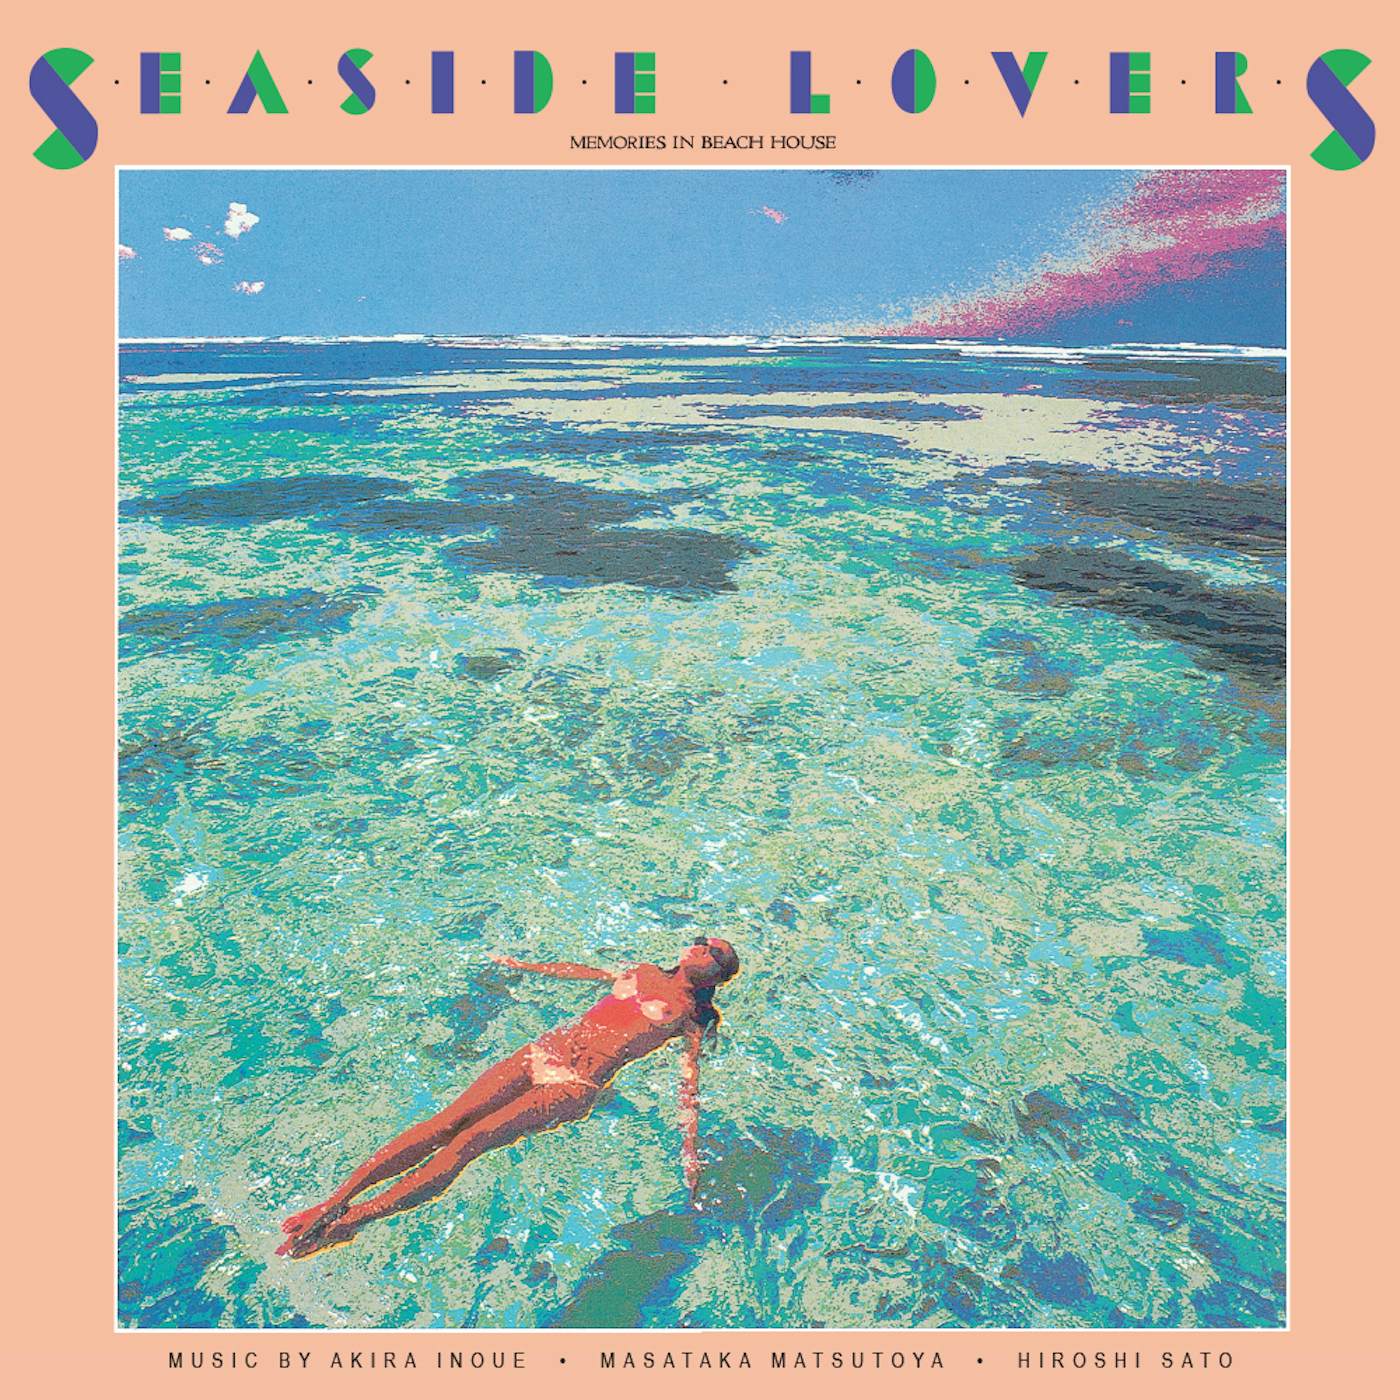 Seaside Lovers MEMORIES IN BEACH HOUSE Vinyl Record